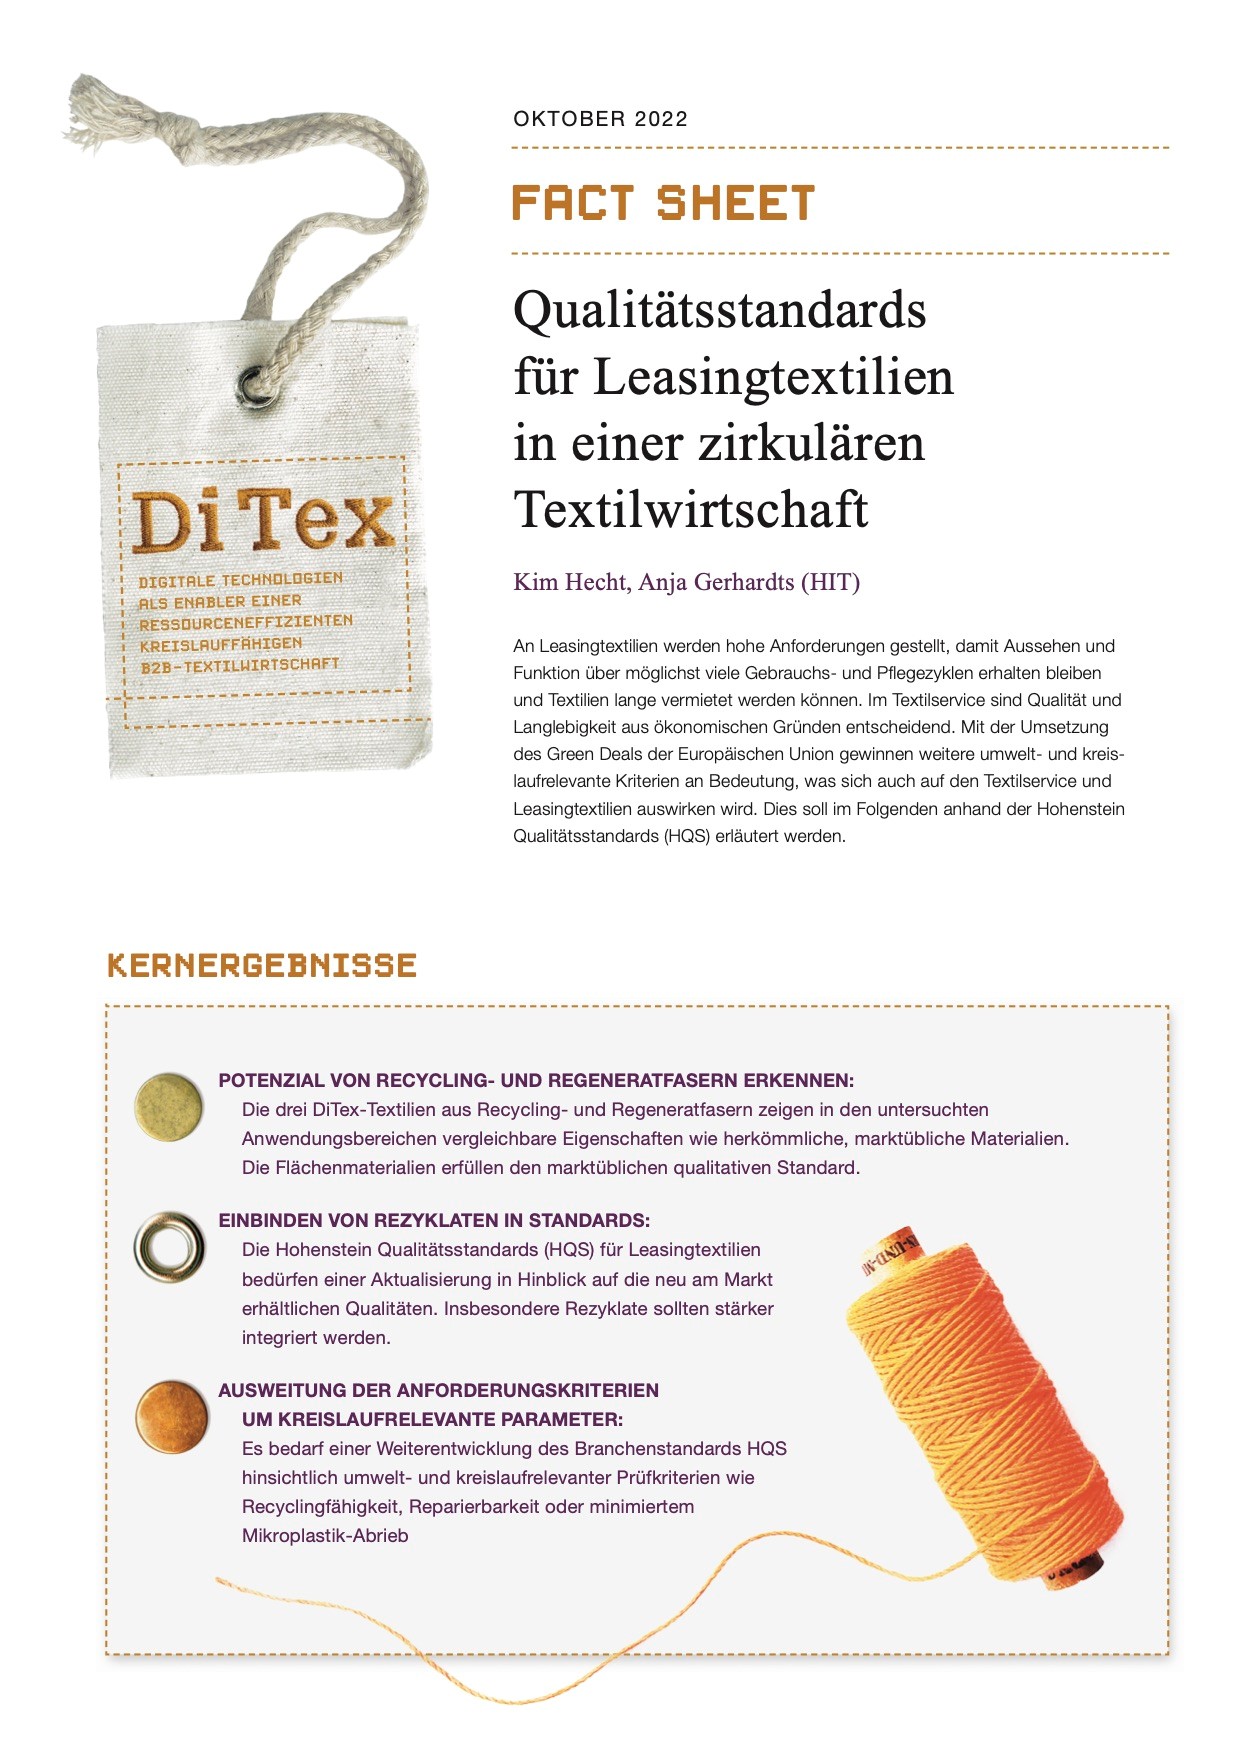 Fact Sheet – Qualitätsstandards für Leasingtextilien in einer zirkulären Textilwirtschaft